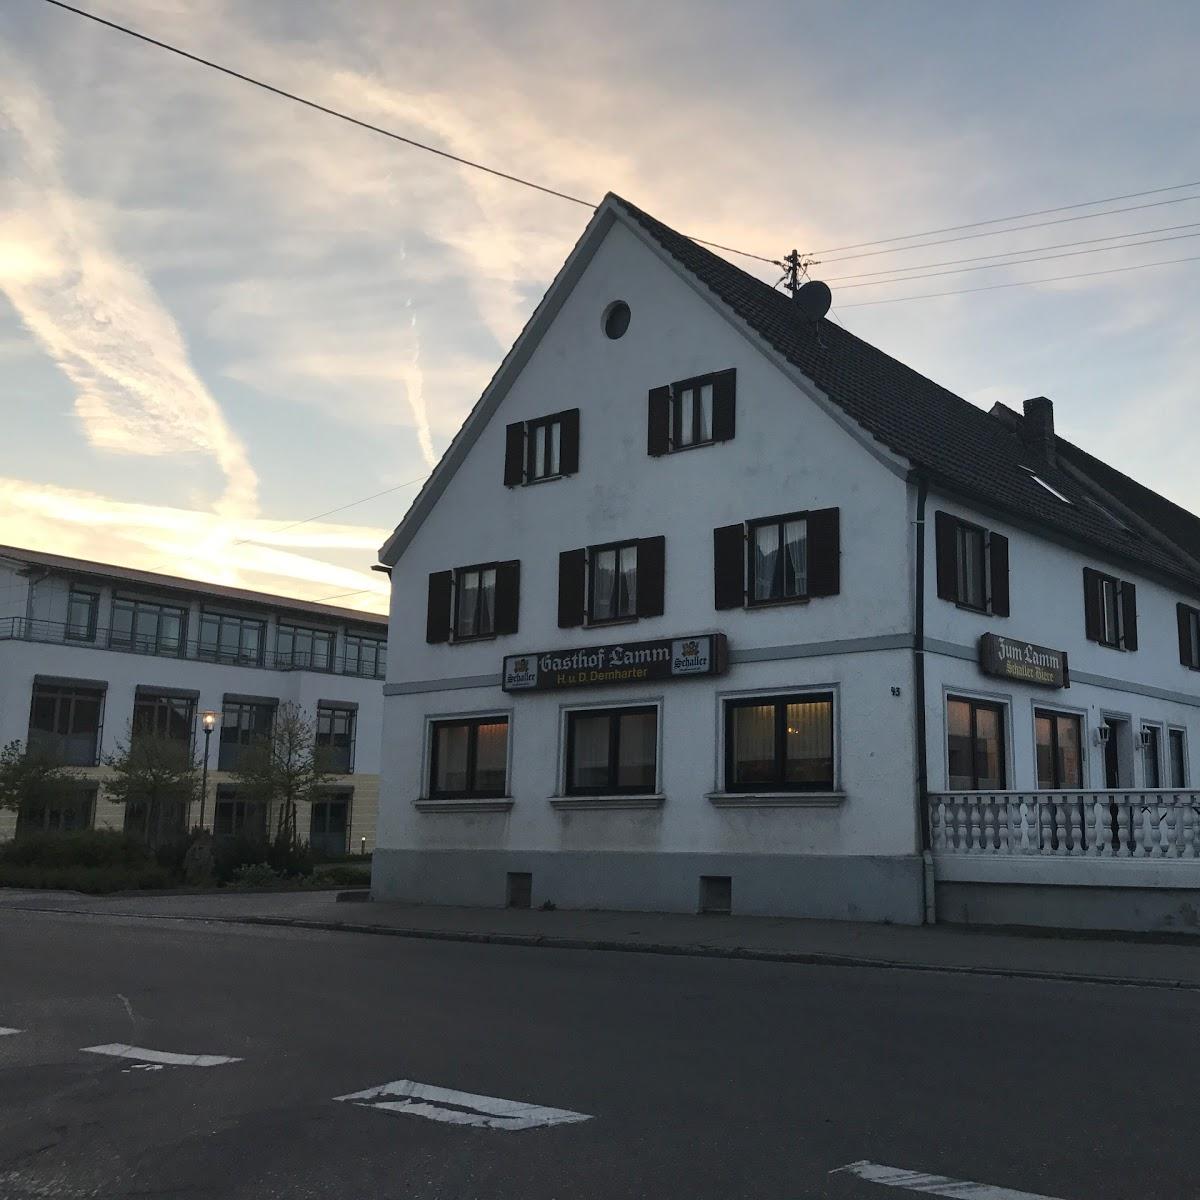 Restaurant "Gaststätte Pension Lamm" in  Holzheim